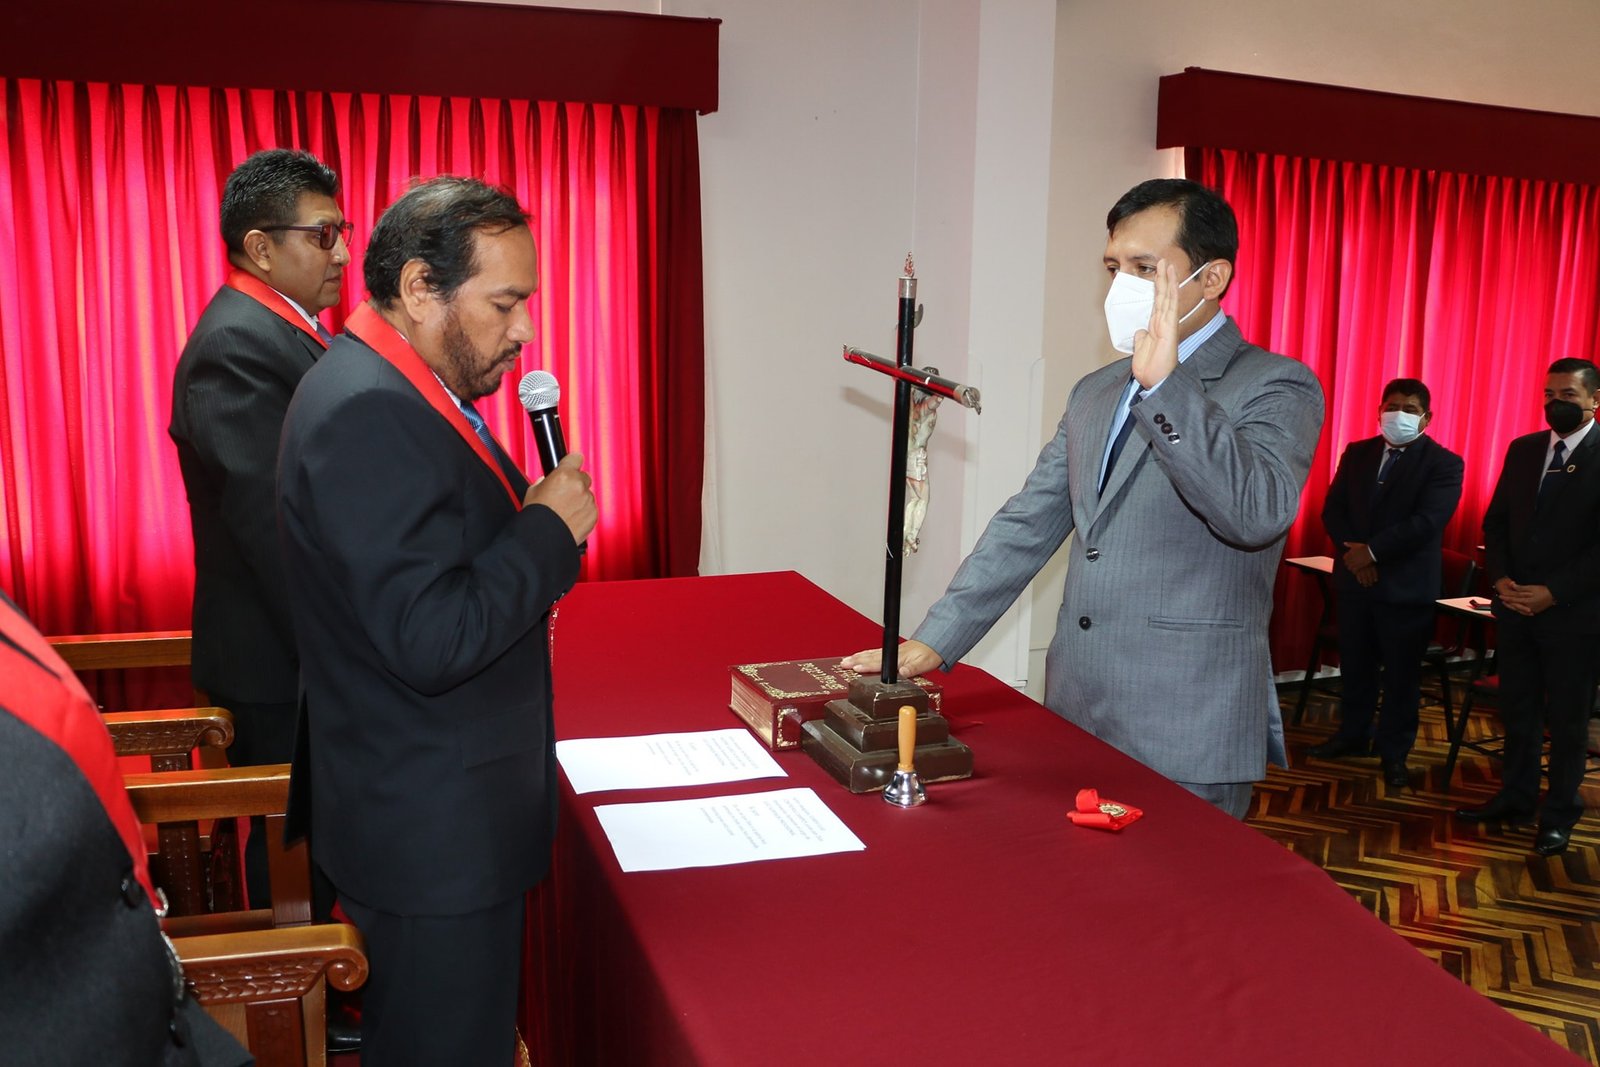 Juez anticorrupción pasó a integrar Sala de Apelaciones de Huánuco